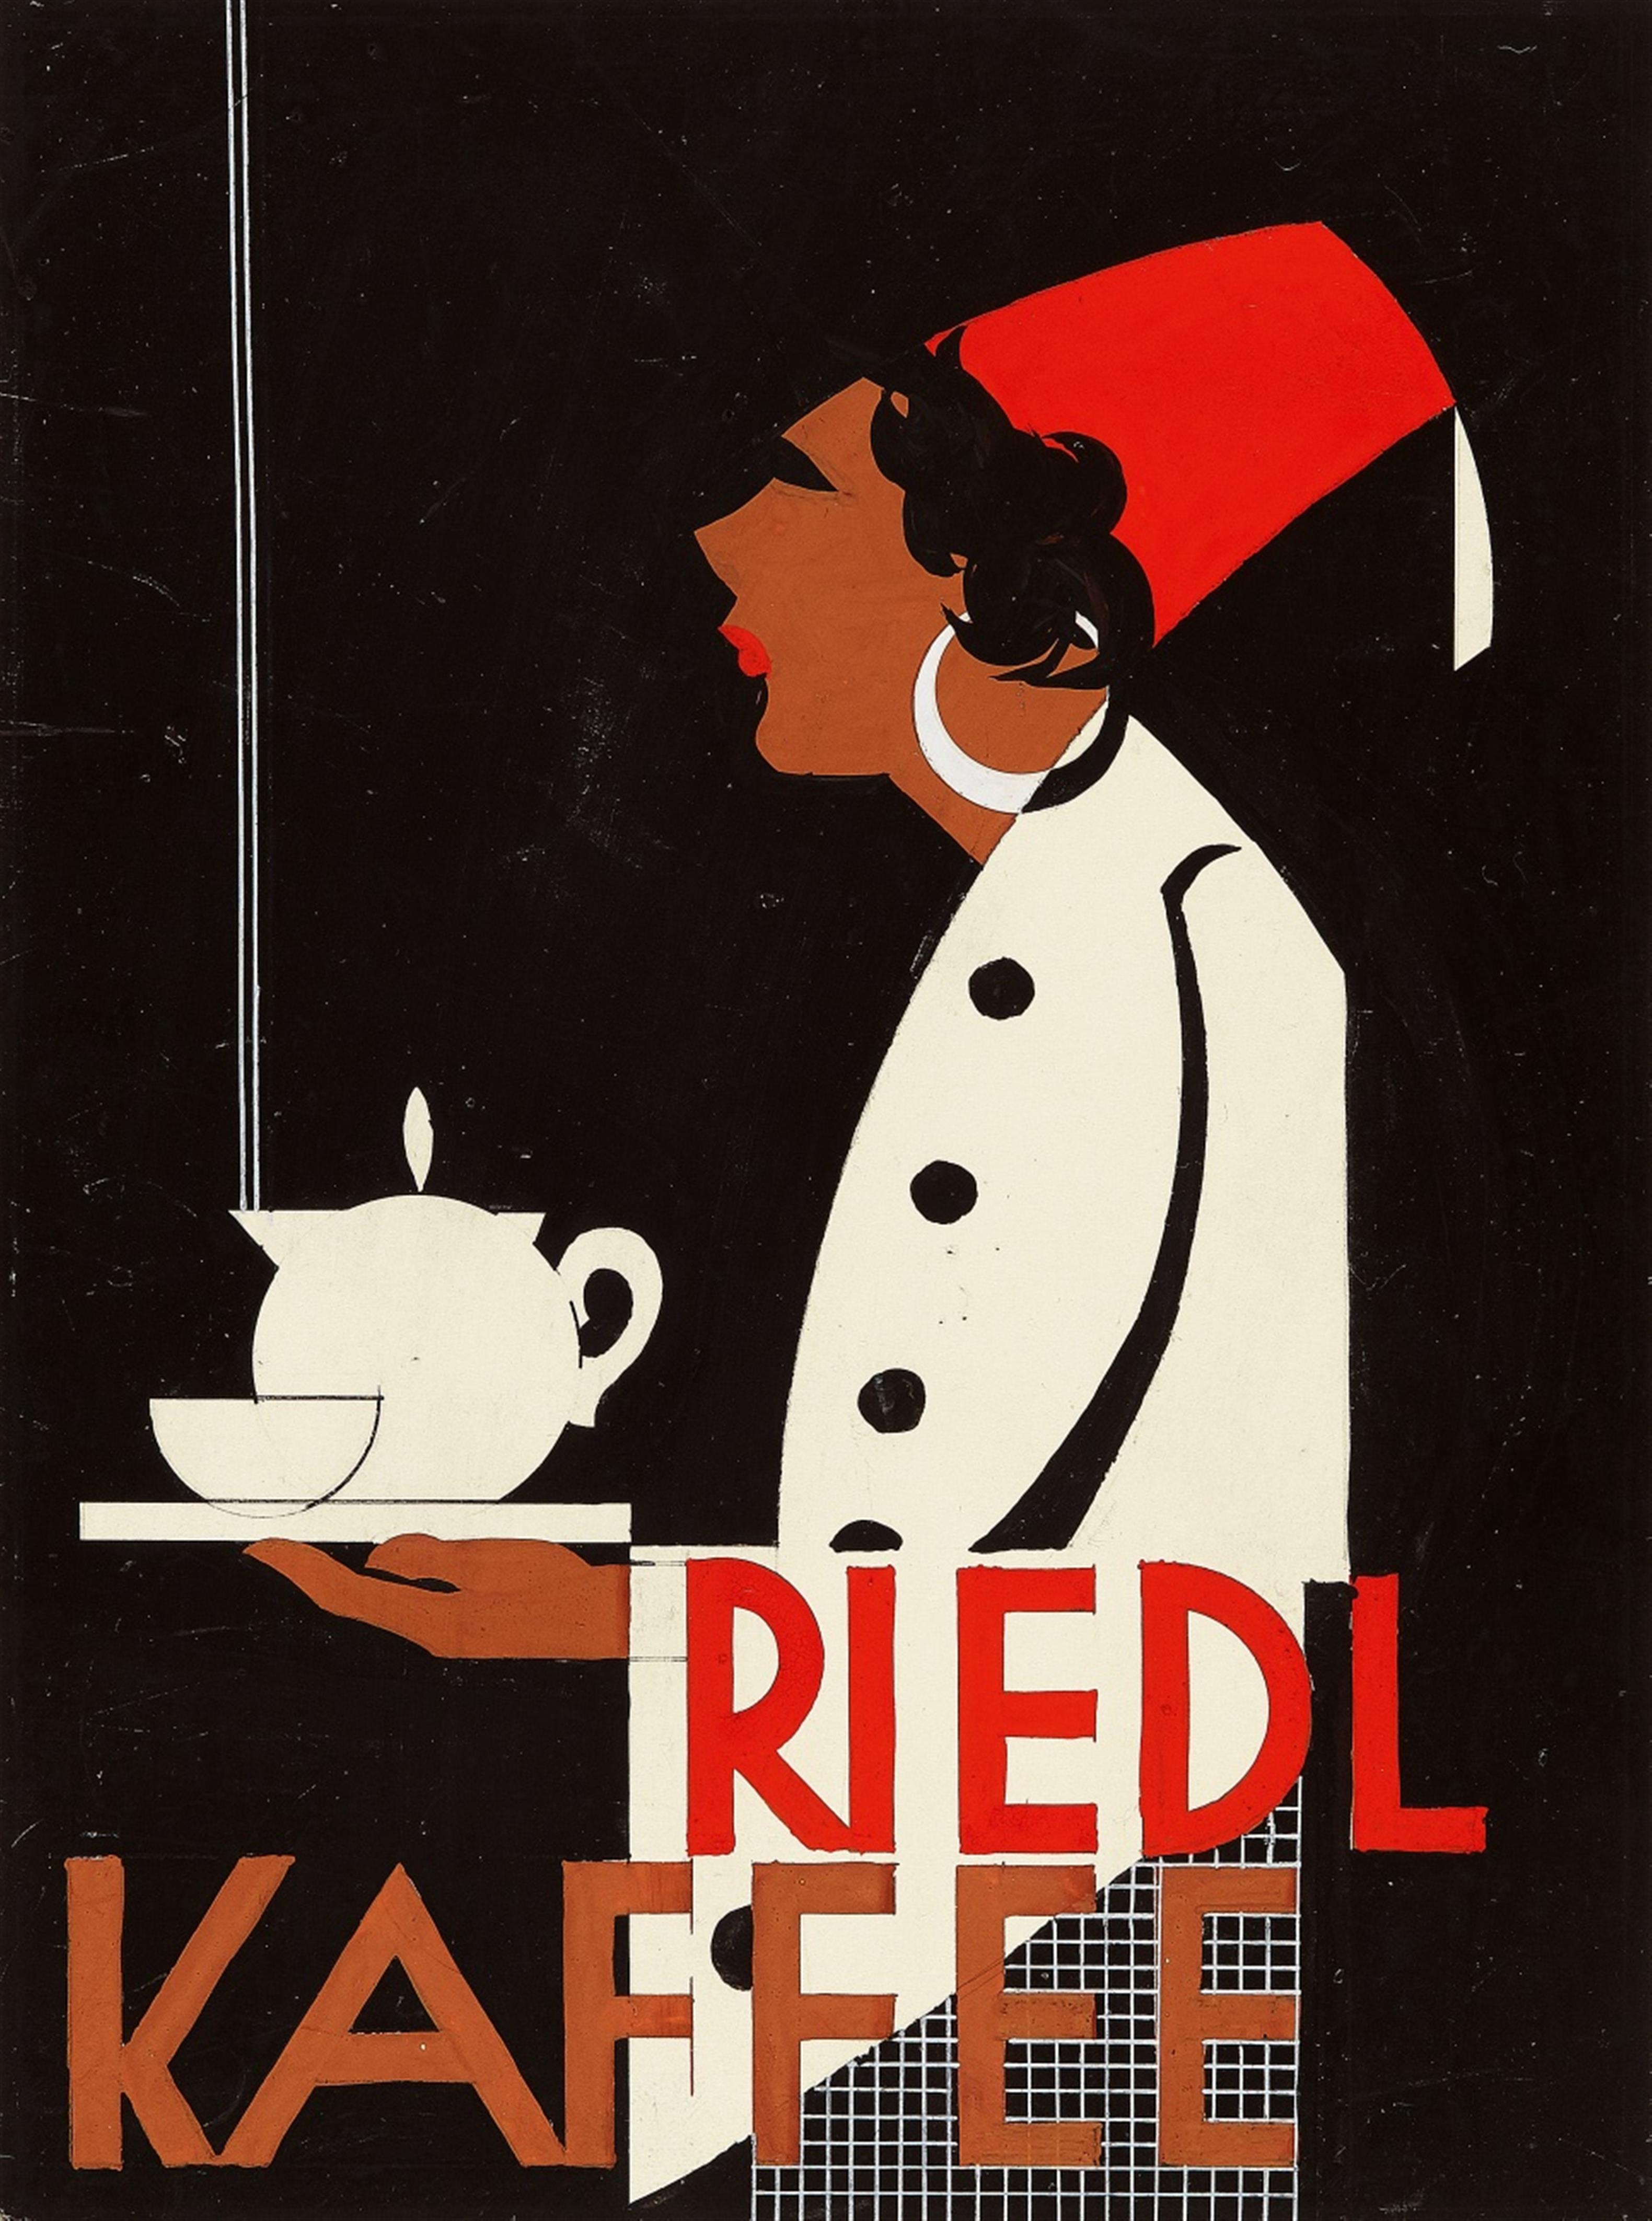 Riedl Kaffee - image-1